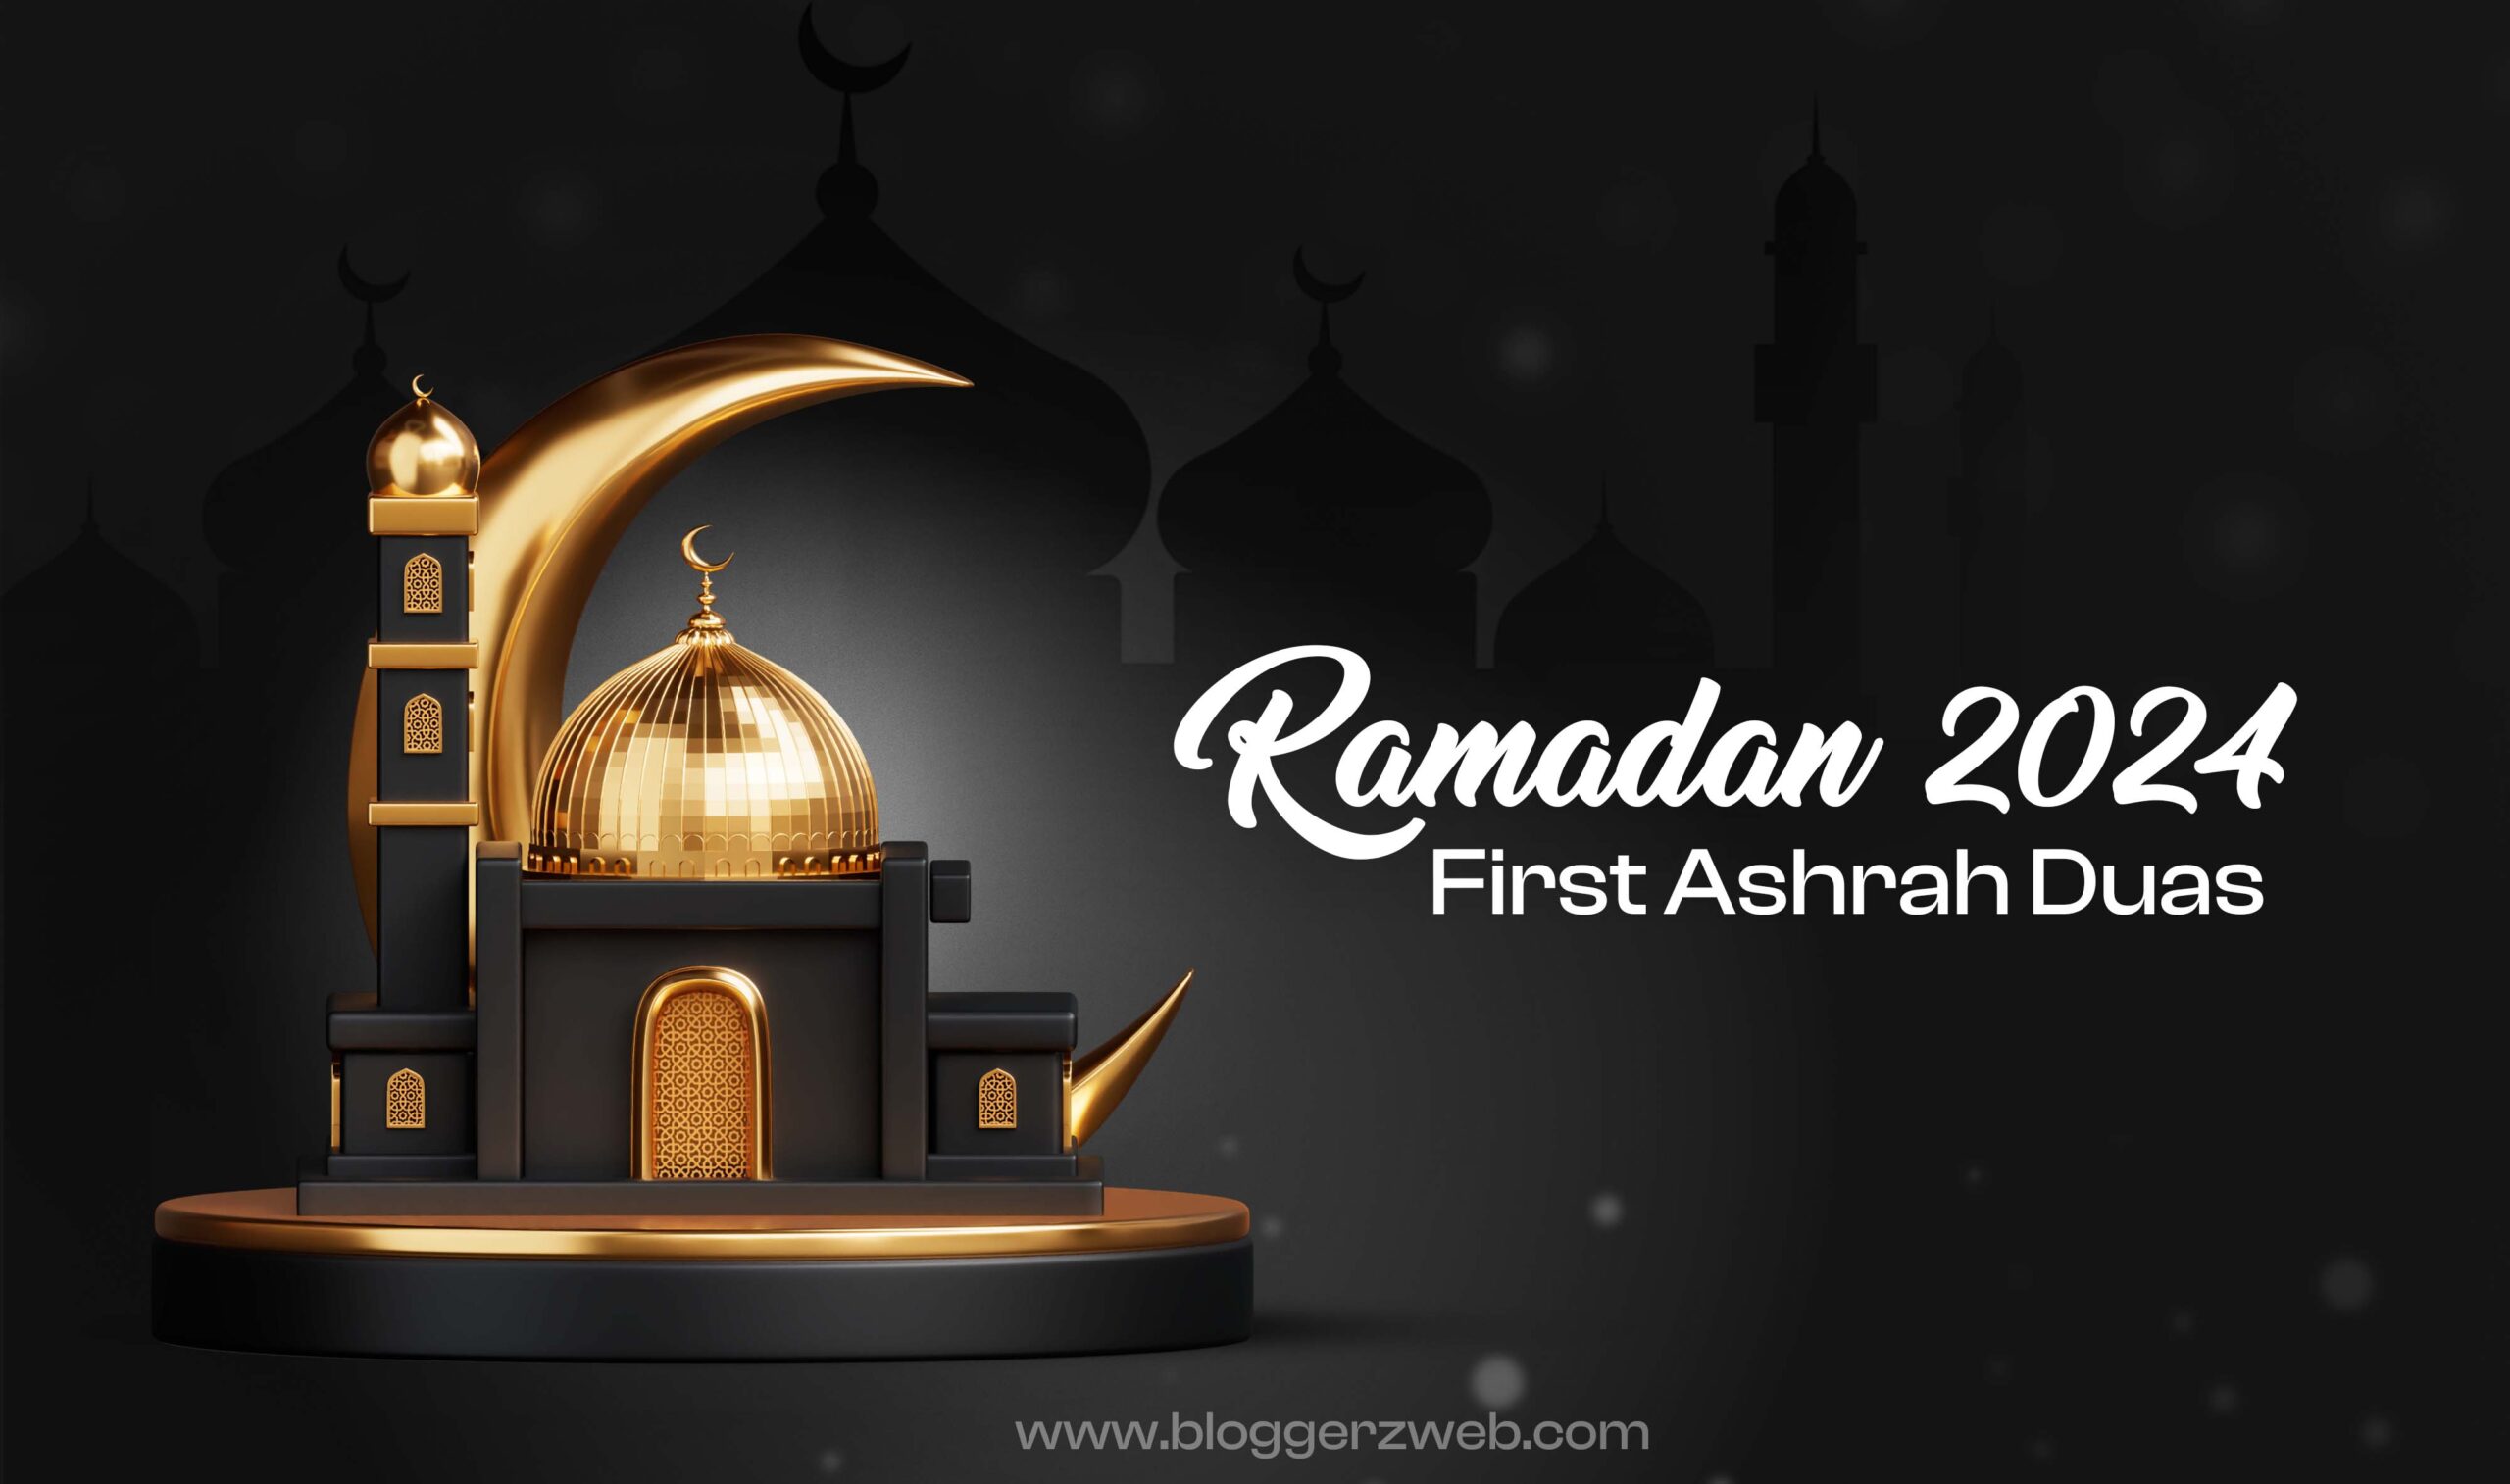 Ramadan Kareem First Ashrah Duas